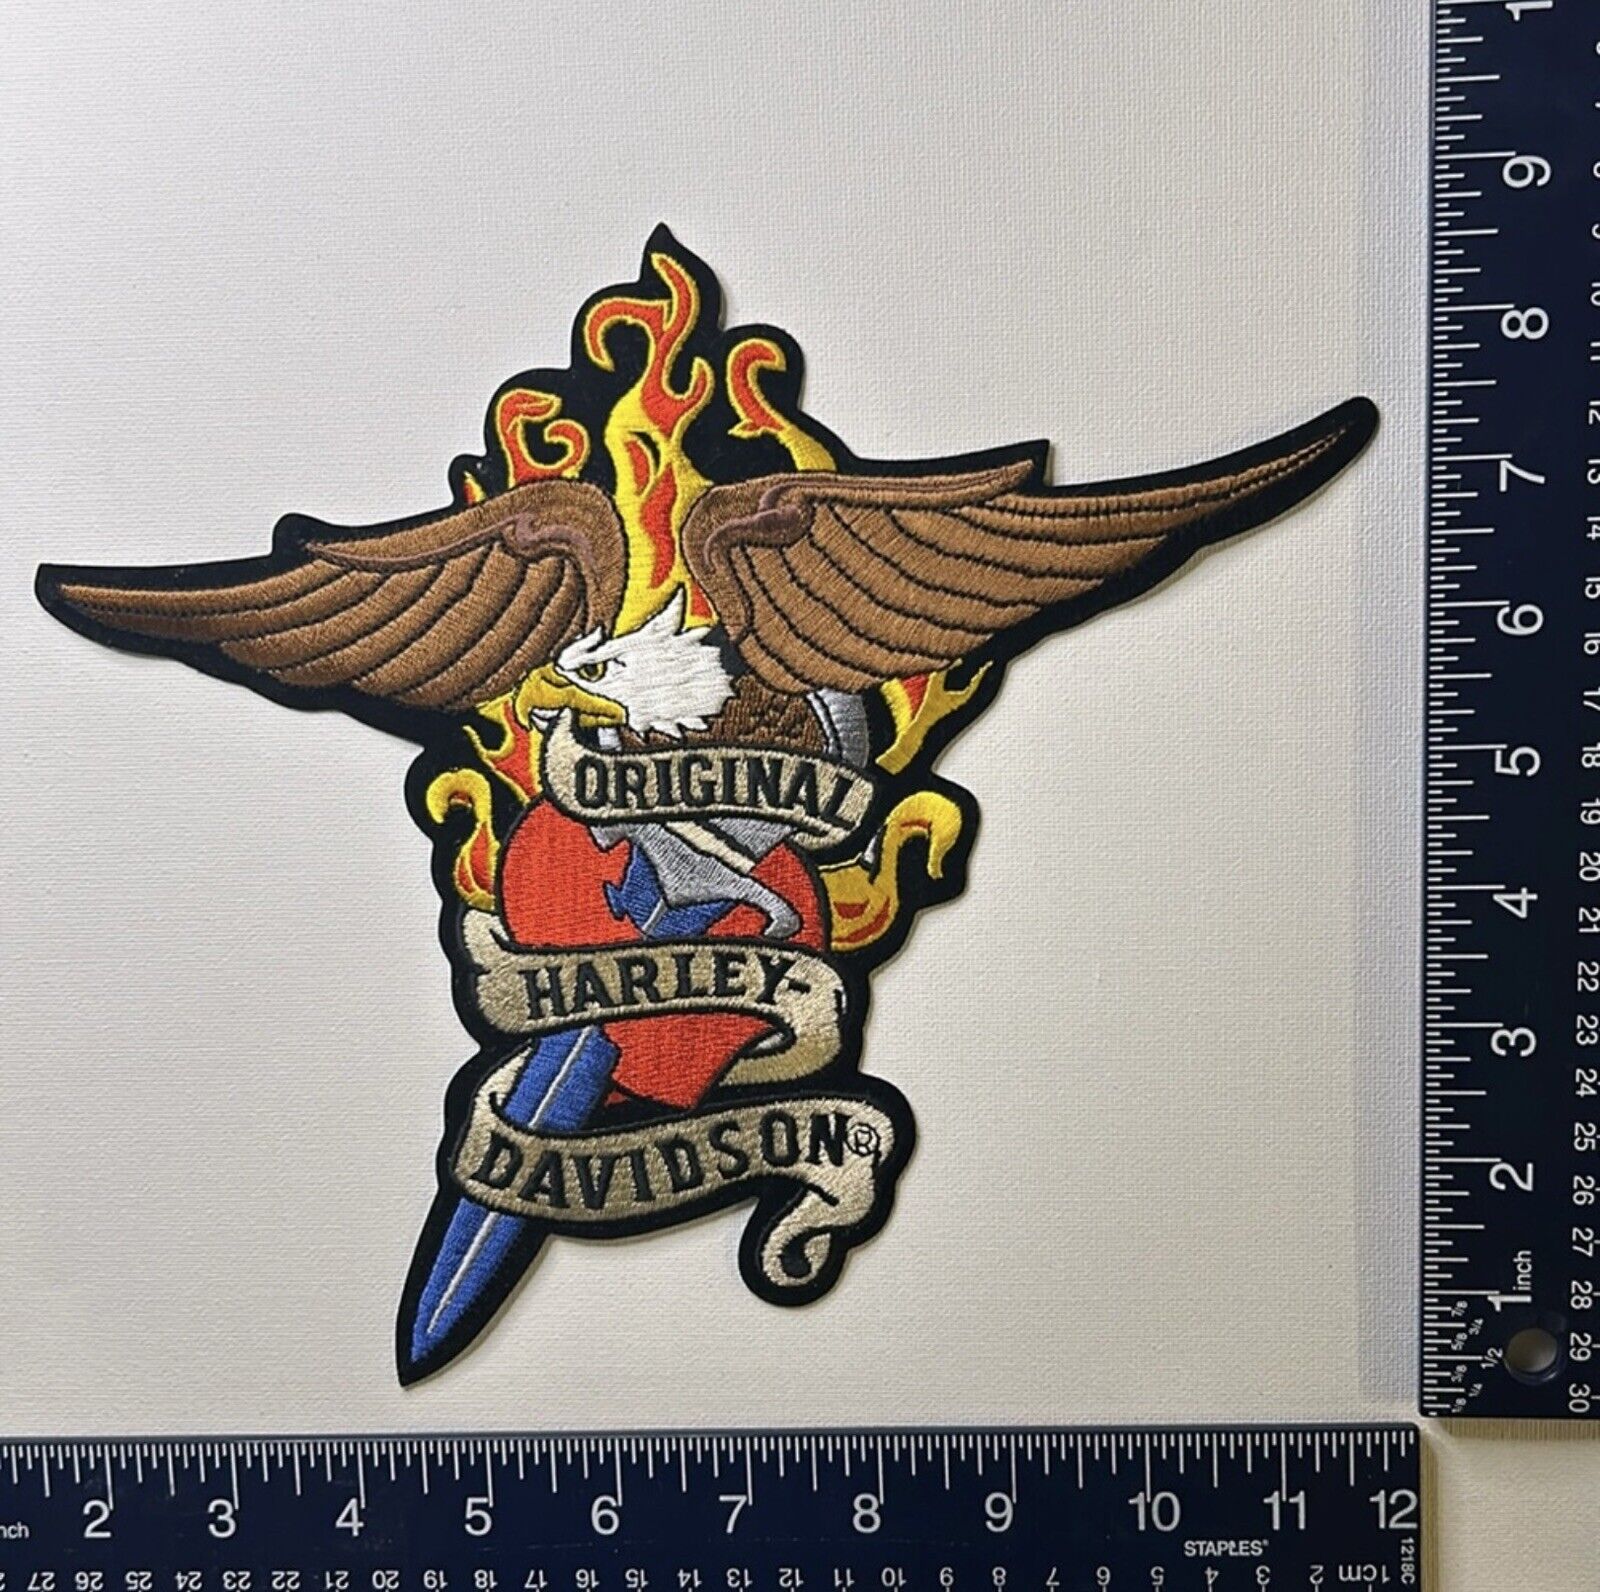 Authentic Vintage Harley-Davidson Patches / Emblems XL